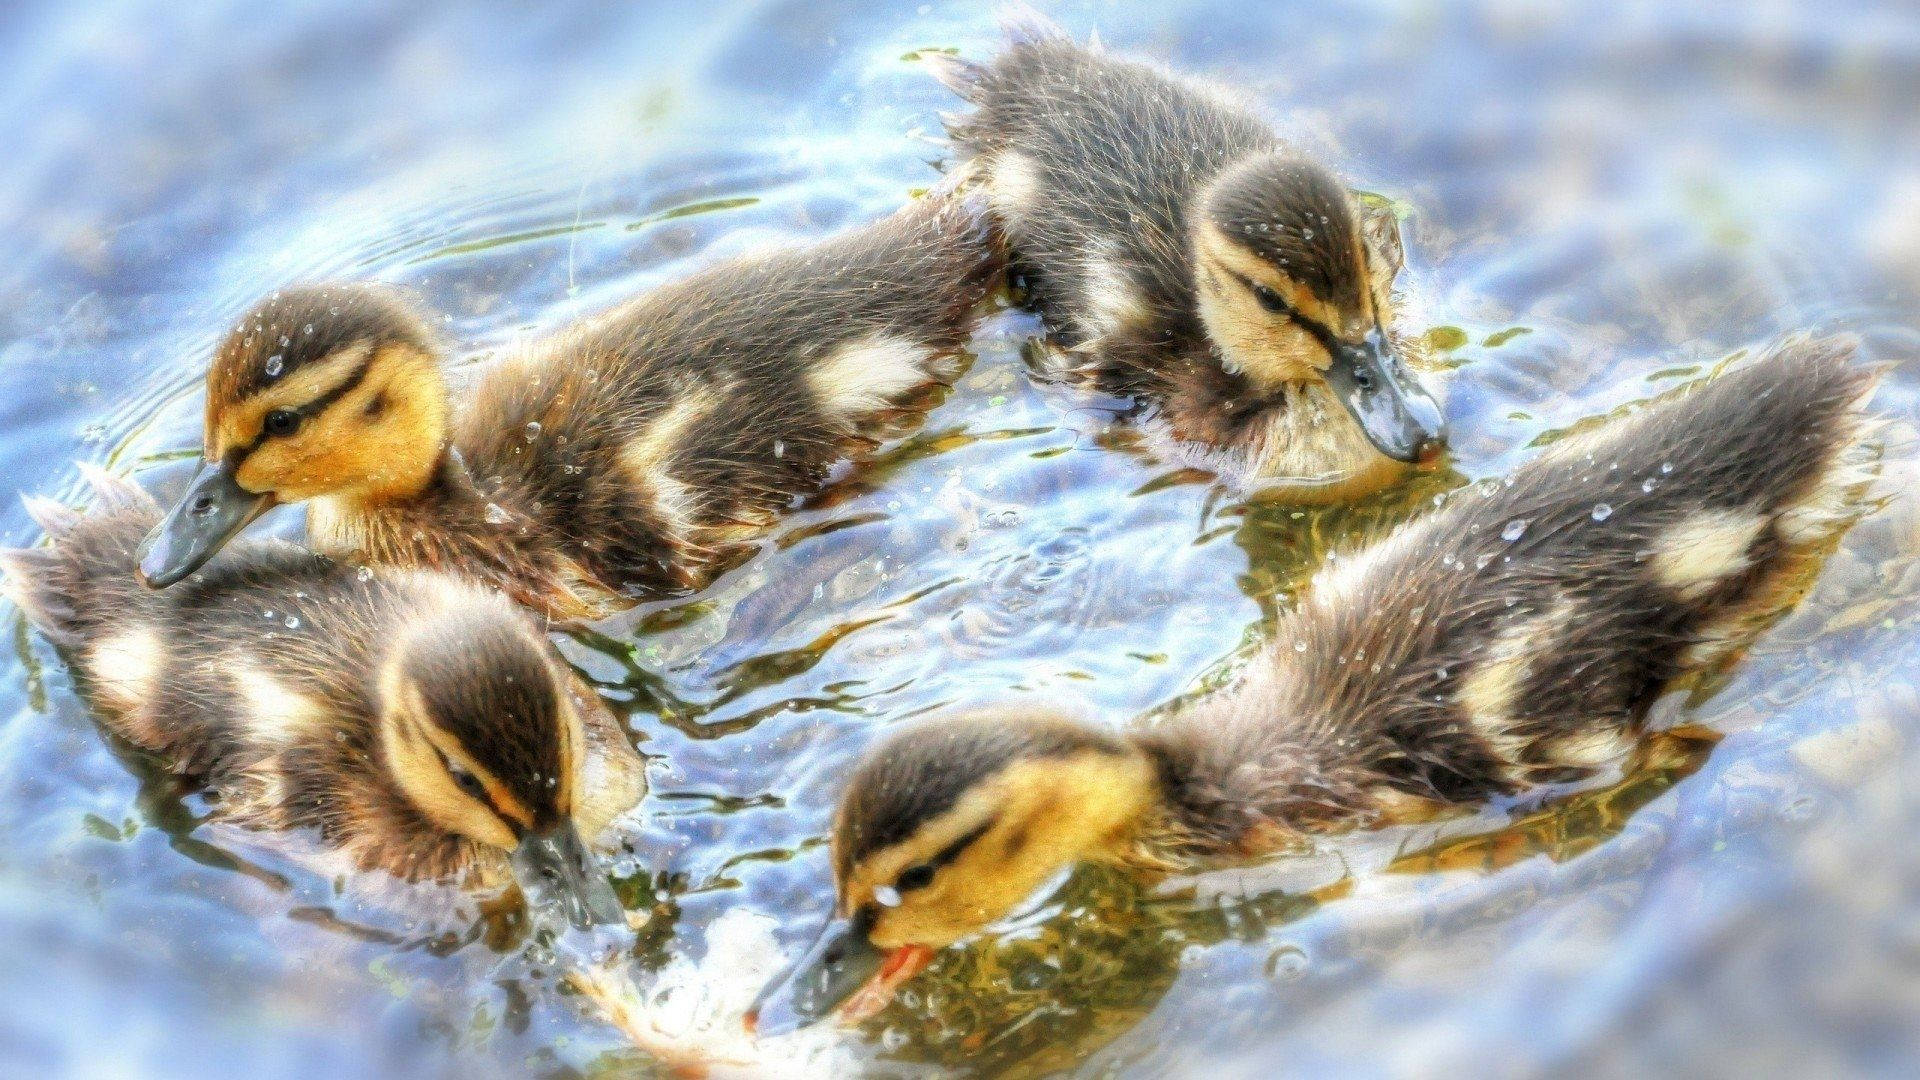 Shiny Baby Ducks Wallpaper